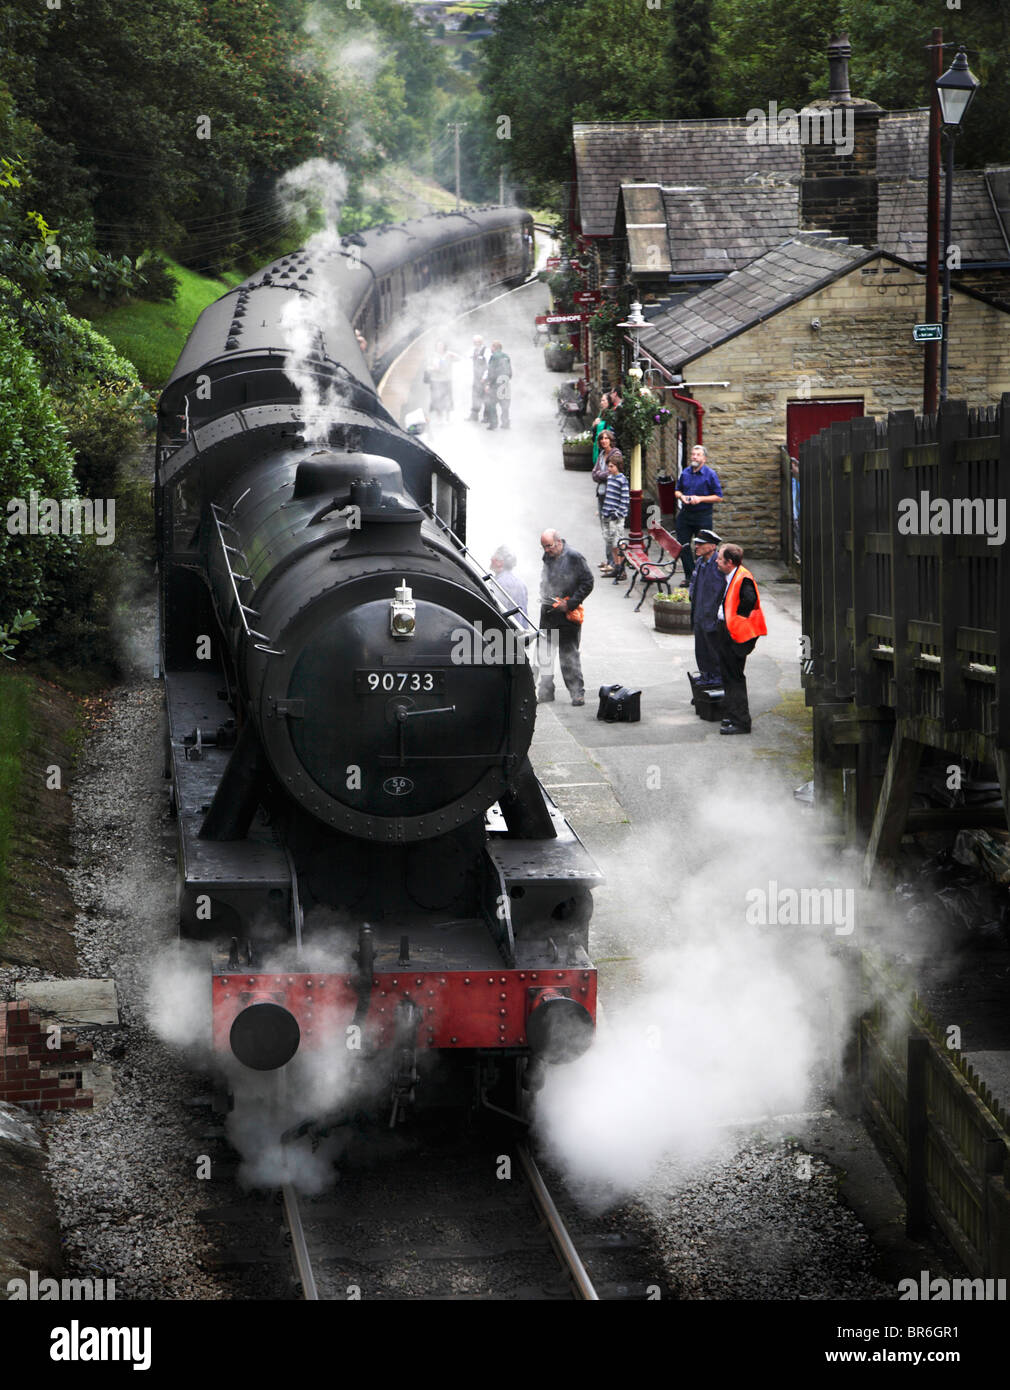 Haworth steam train Stock Photo